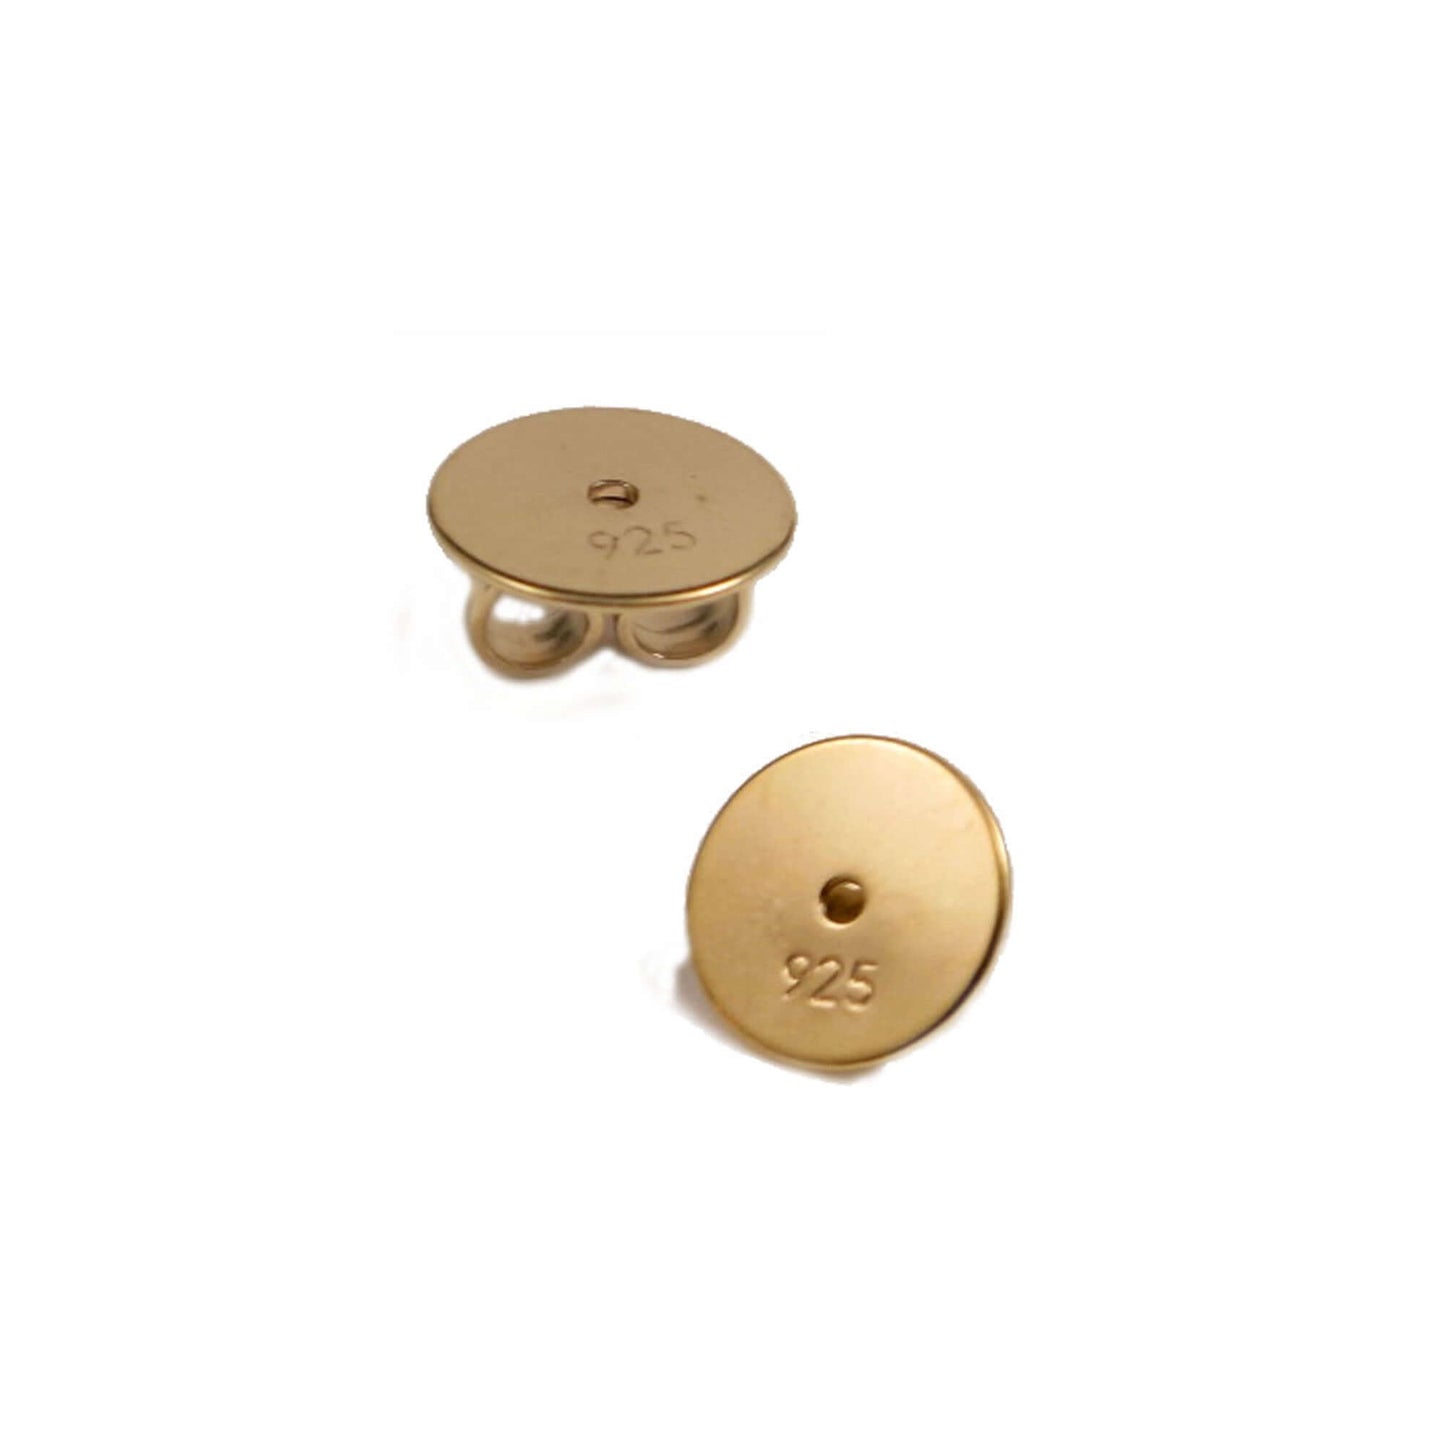 XL Ohrmutter 8mm vergoldet Silber 925/- für schwere Ohrstecker oder größere Ohrlöcher